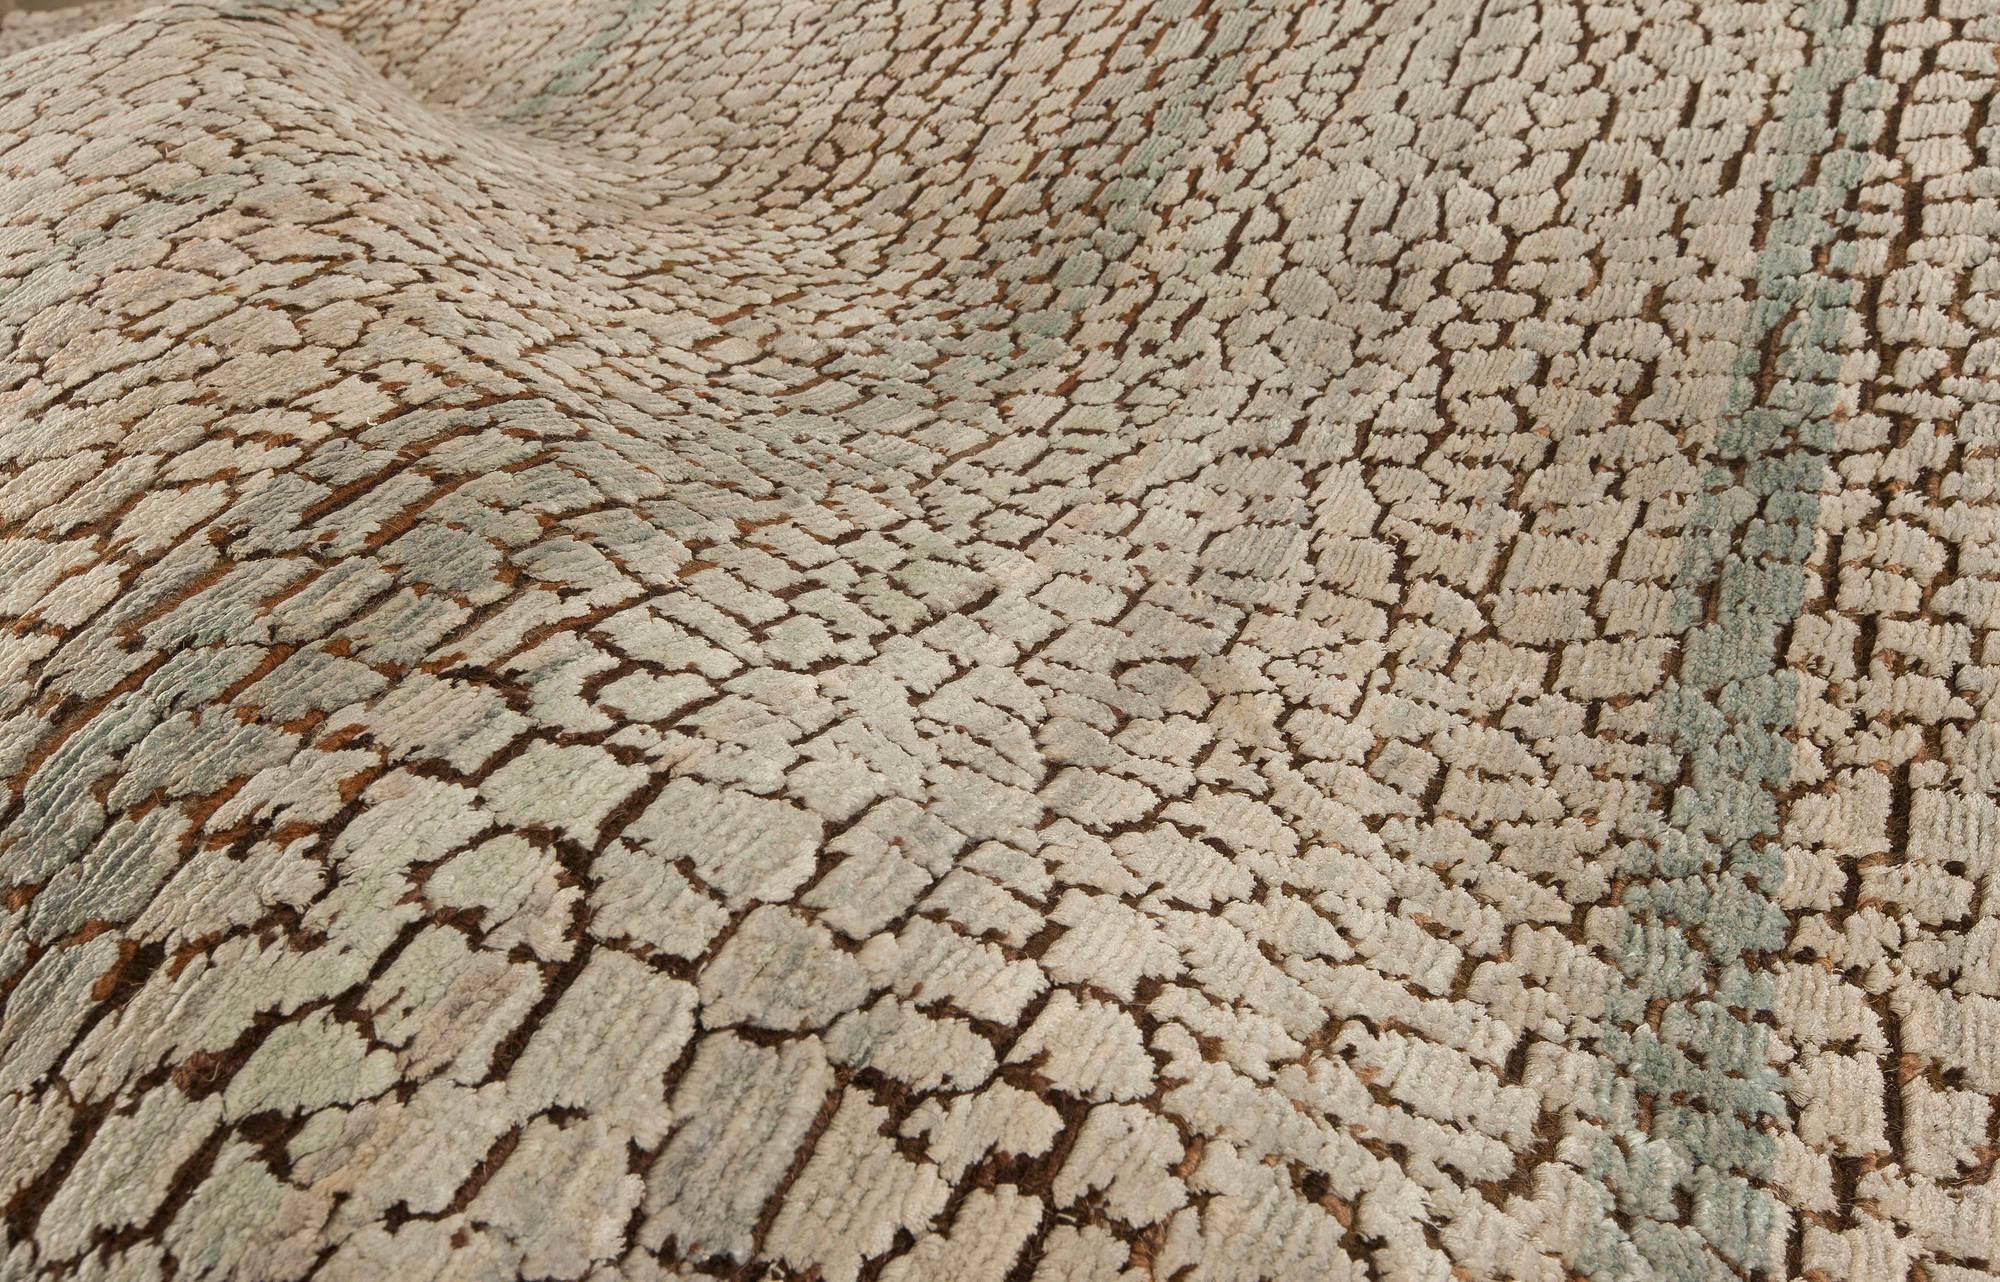 snakeskin rug